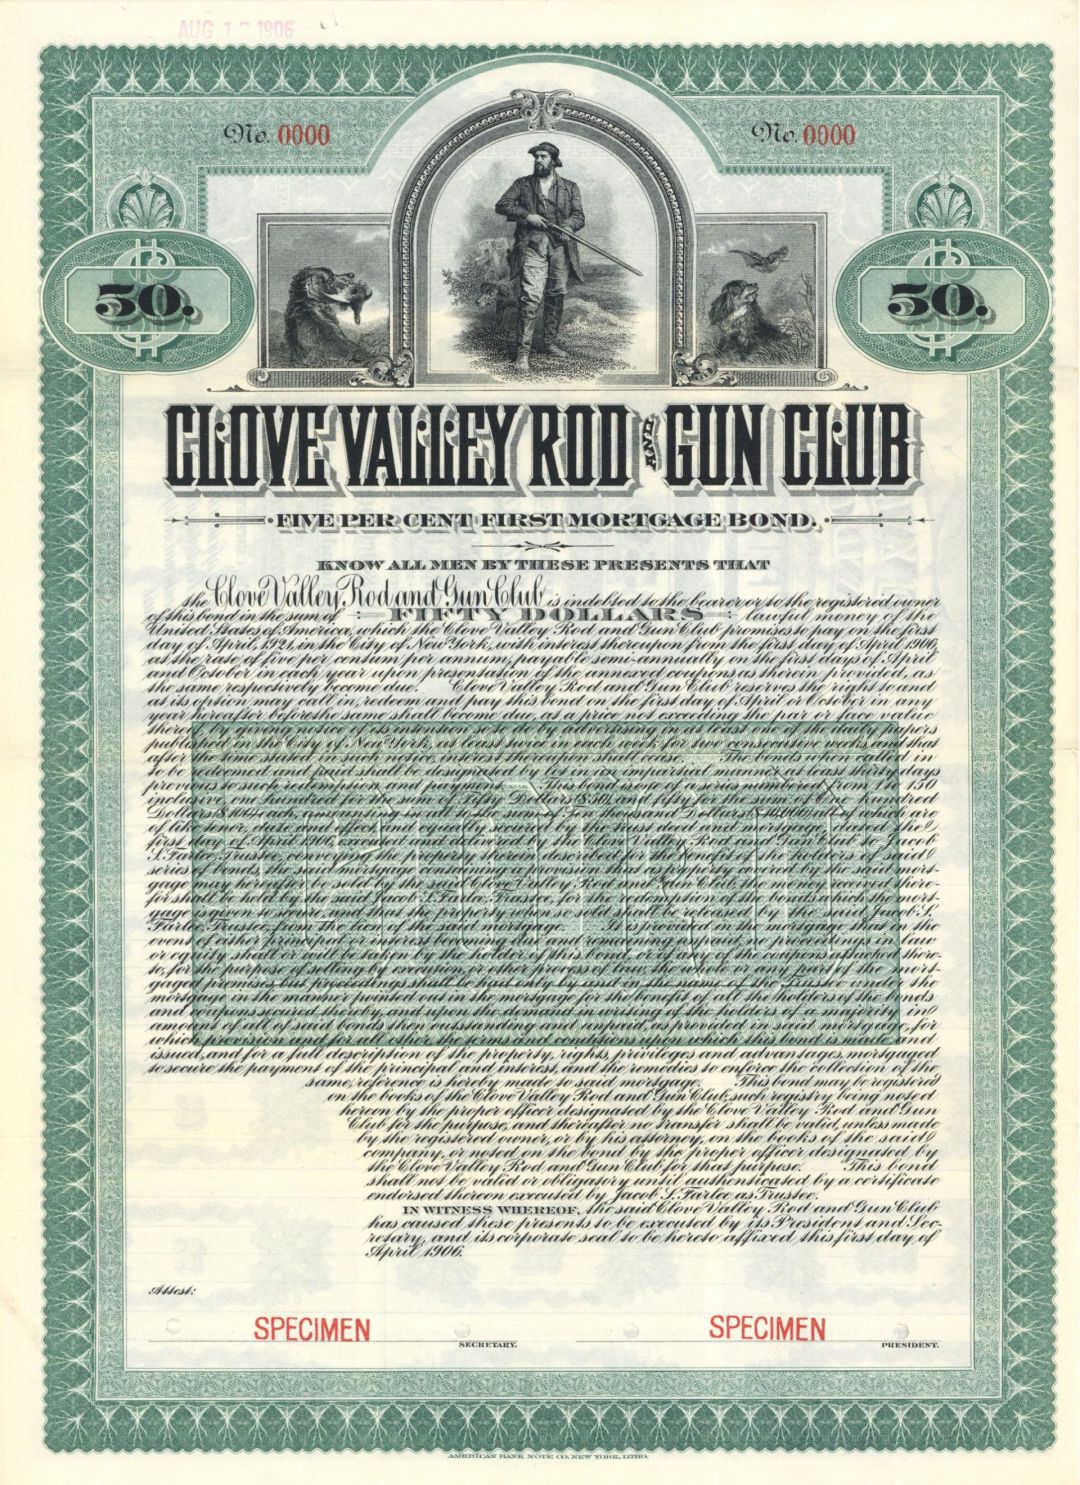 Clove Valley Rod and Gun Club - 1906 dated $50 Specimen Gun Club Bond